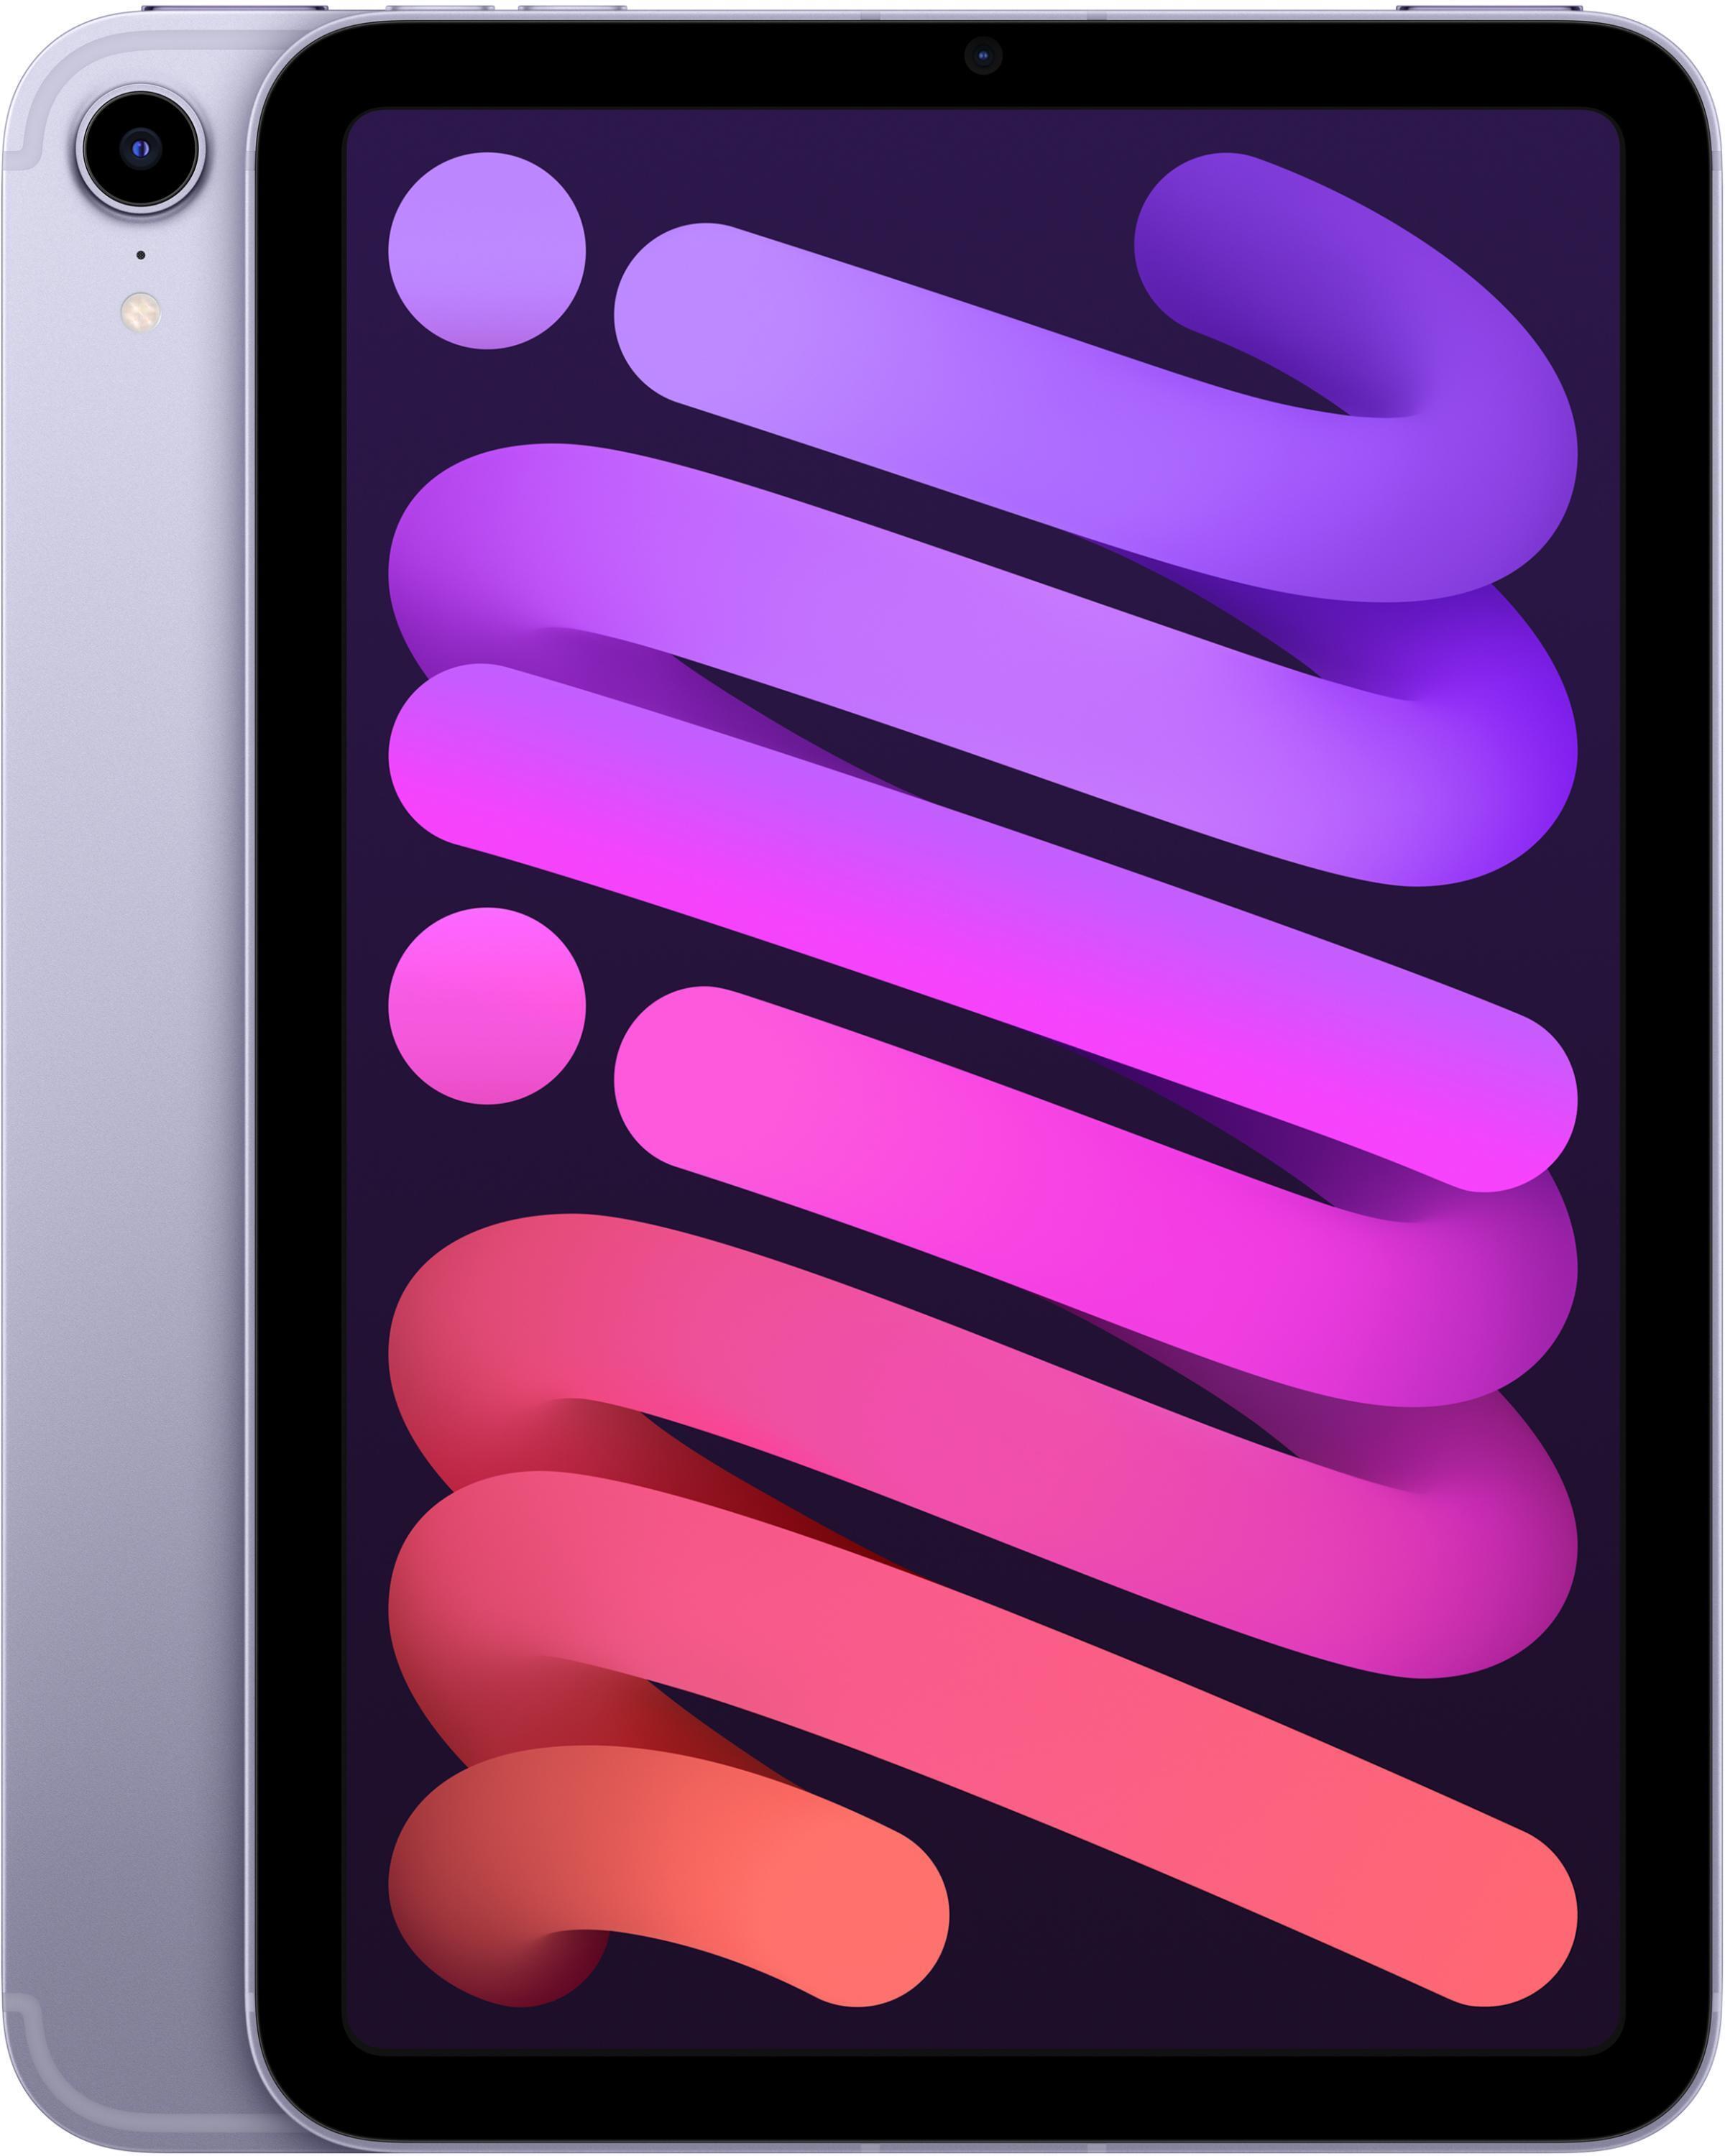 Apple iPad mini Wi-Fi + Cellular 64GB - Purple | Sweetwater